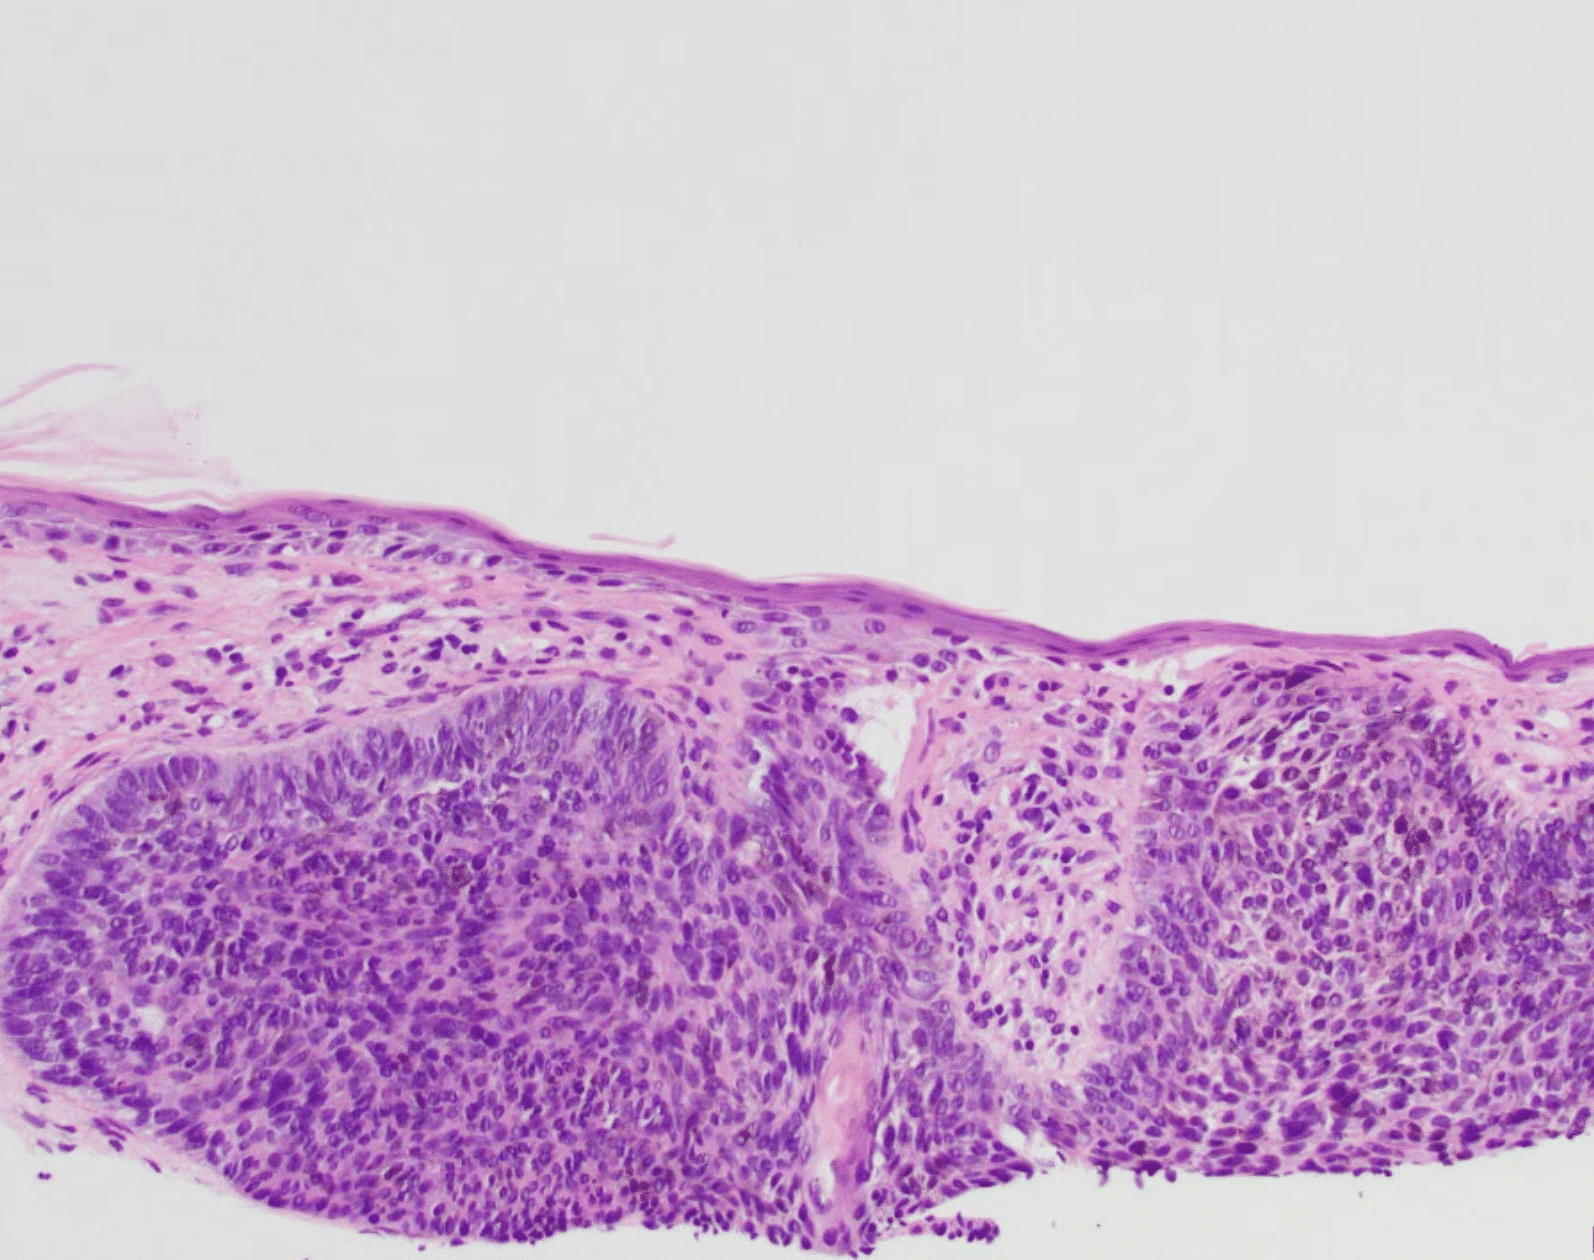 basal cell skin cancer pathology